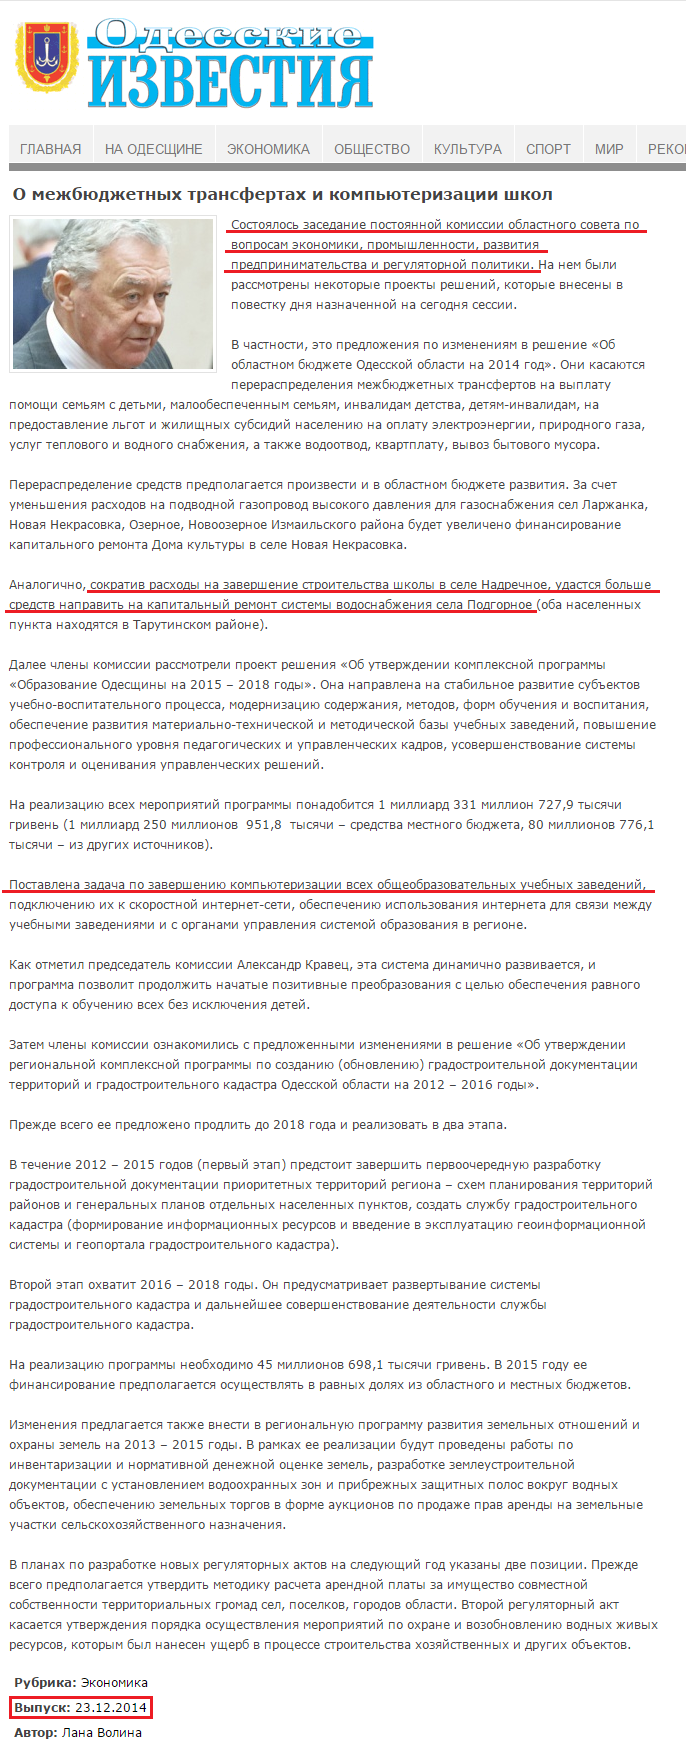 http://izvestiya.odessa.ua/ru/2014/12/24/o-mezhbyudzhetnyh-transfertah-i-kompyuterizacii-shkol